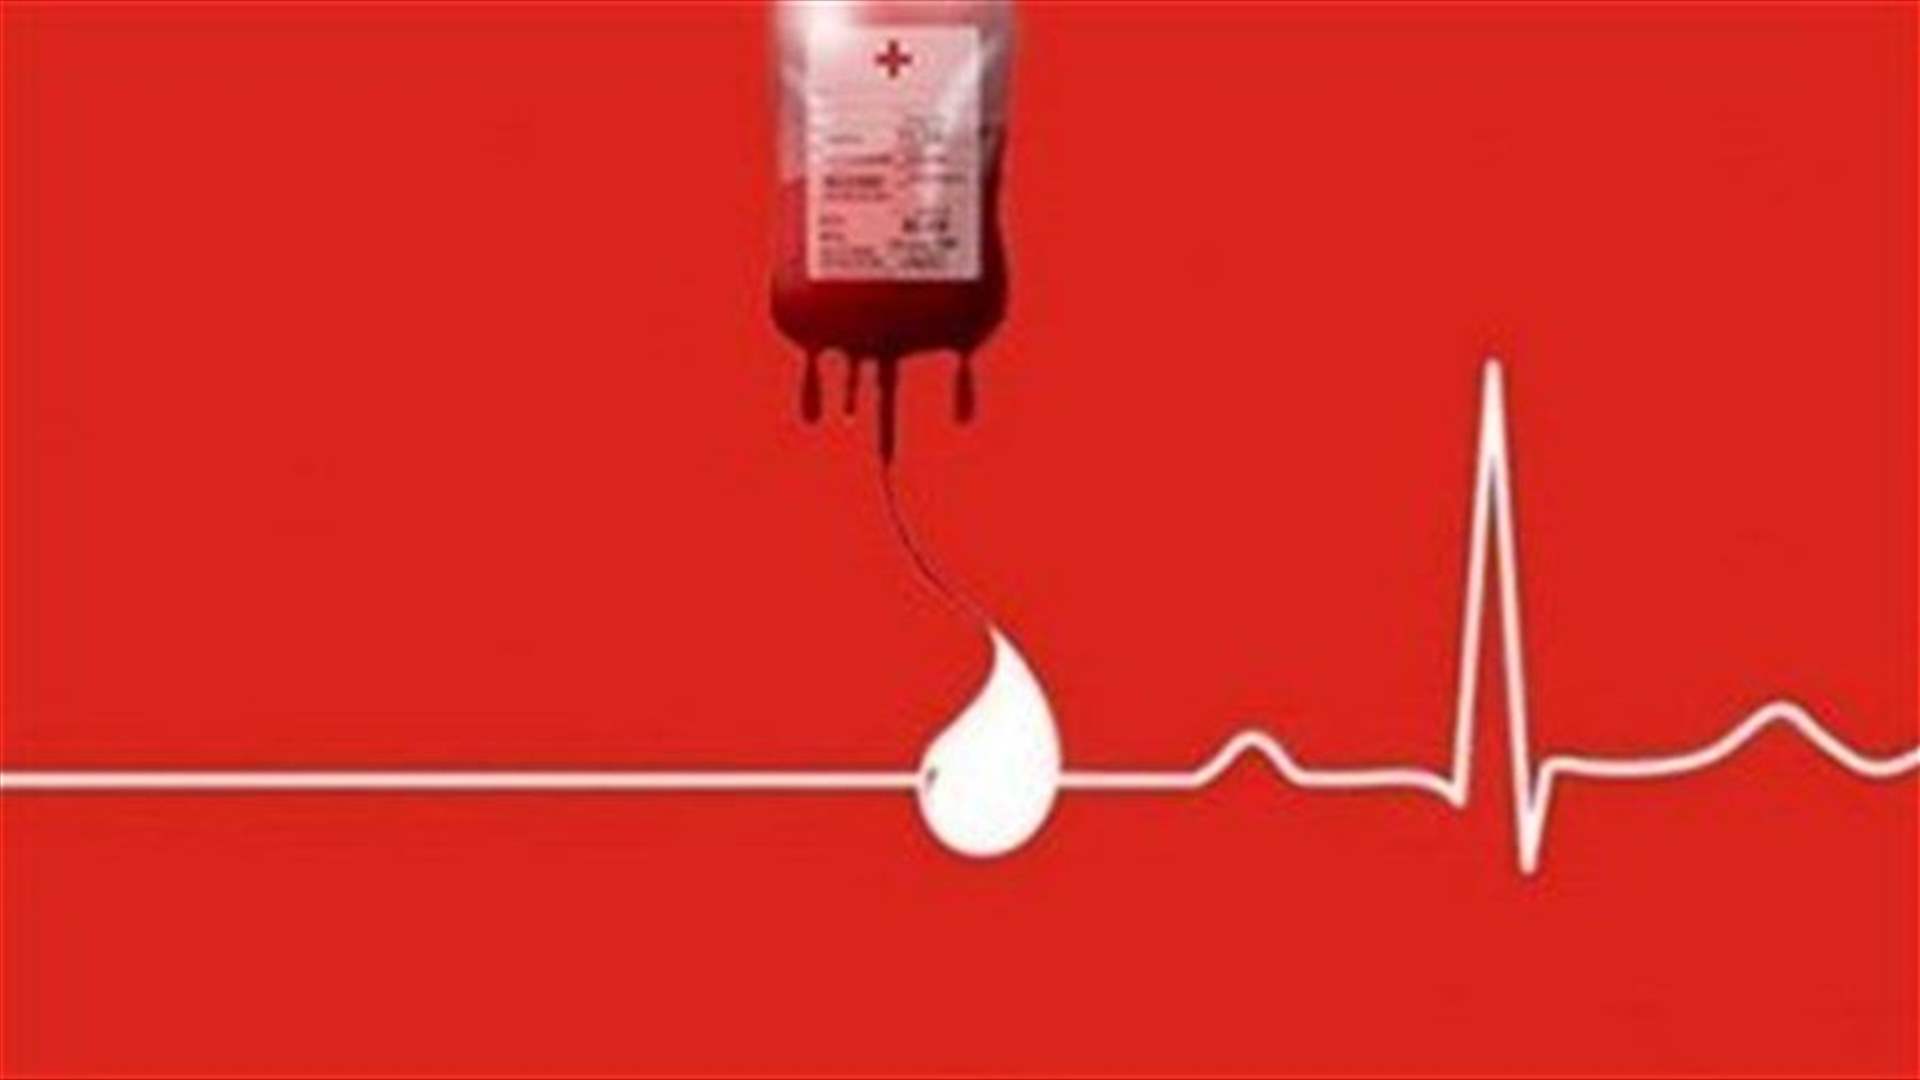 مريض في مستشفى الروم بحاجة ماسة إلى وحدة دم من فئة A+... للمساعدة الاتصال على: 76052691